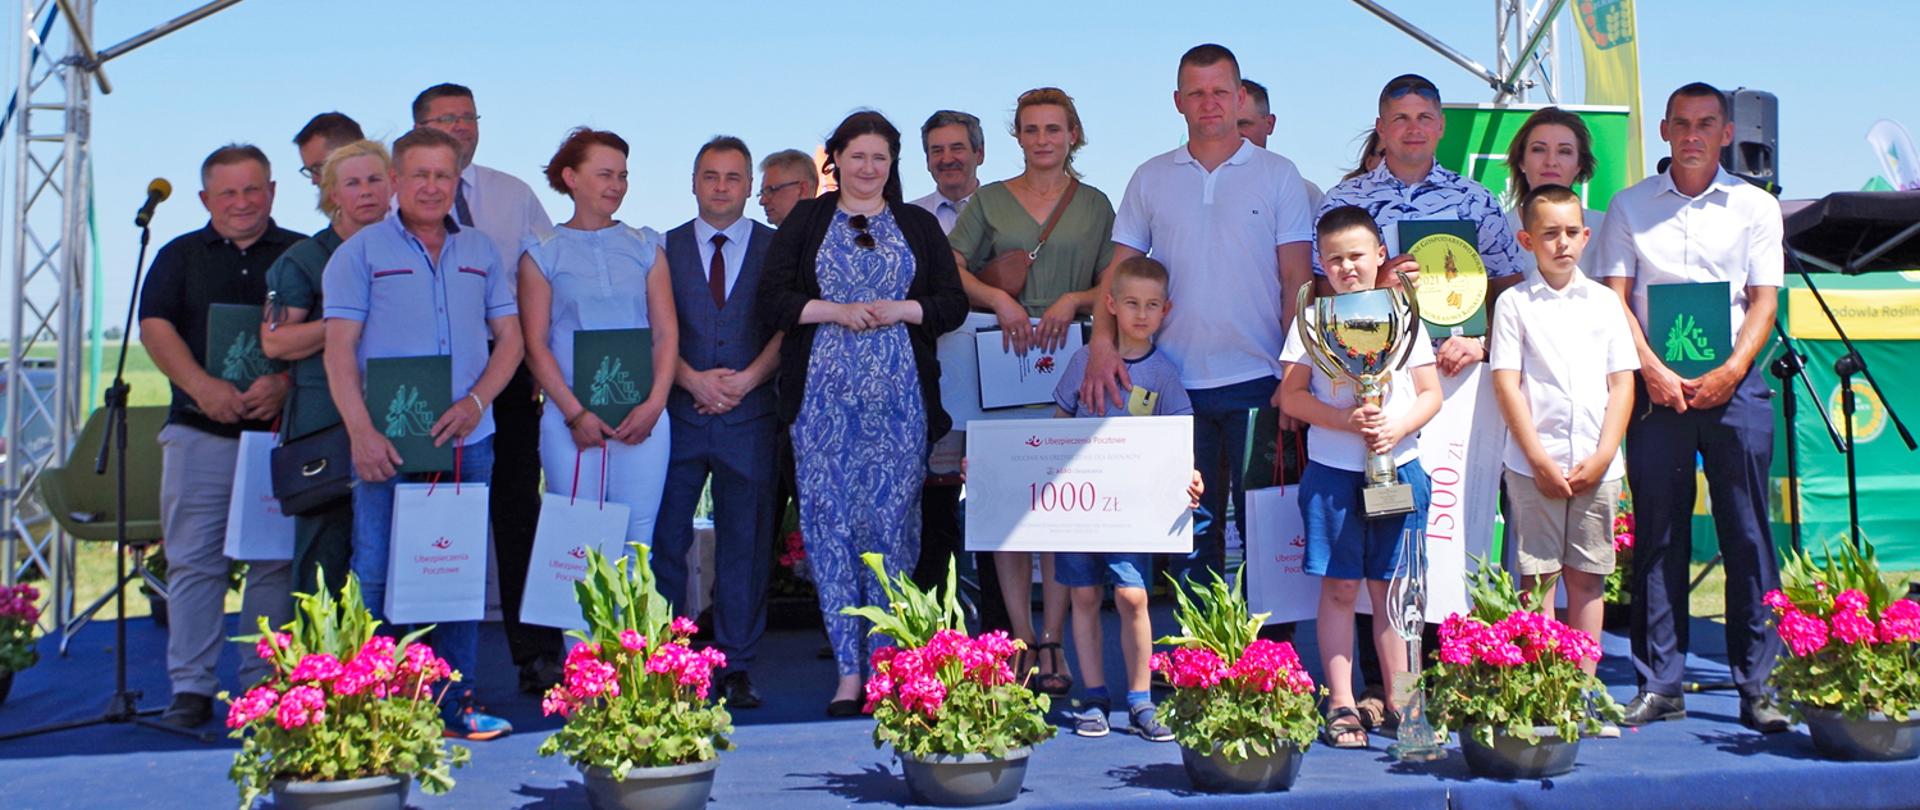 Pod honorowym patronatem ministra rolnictwa i rozwoju wsi Grzegorza Pudy odbyły się Krajowe Dni Pola Minikowo 2021 i Międzynarodowe Targi Rolno-Przemysłowe AGRO-TECH Minikowo.